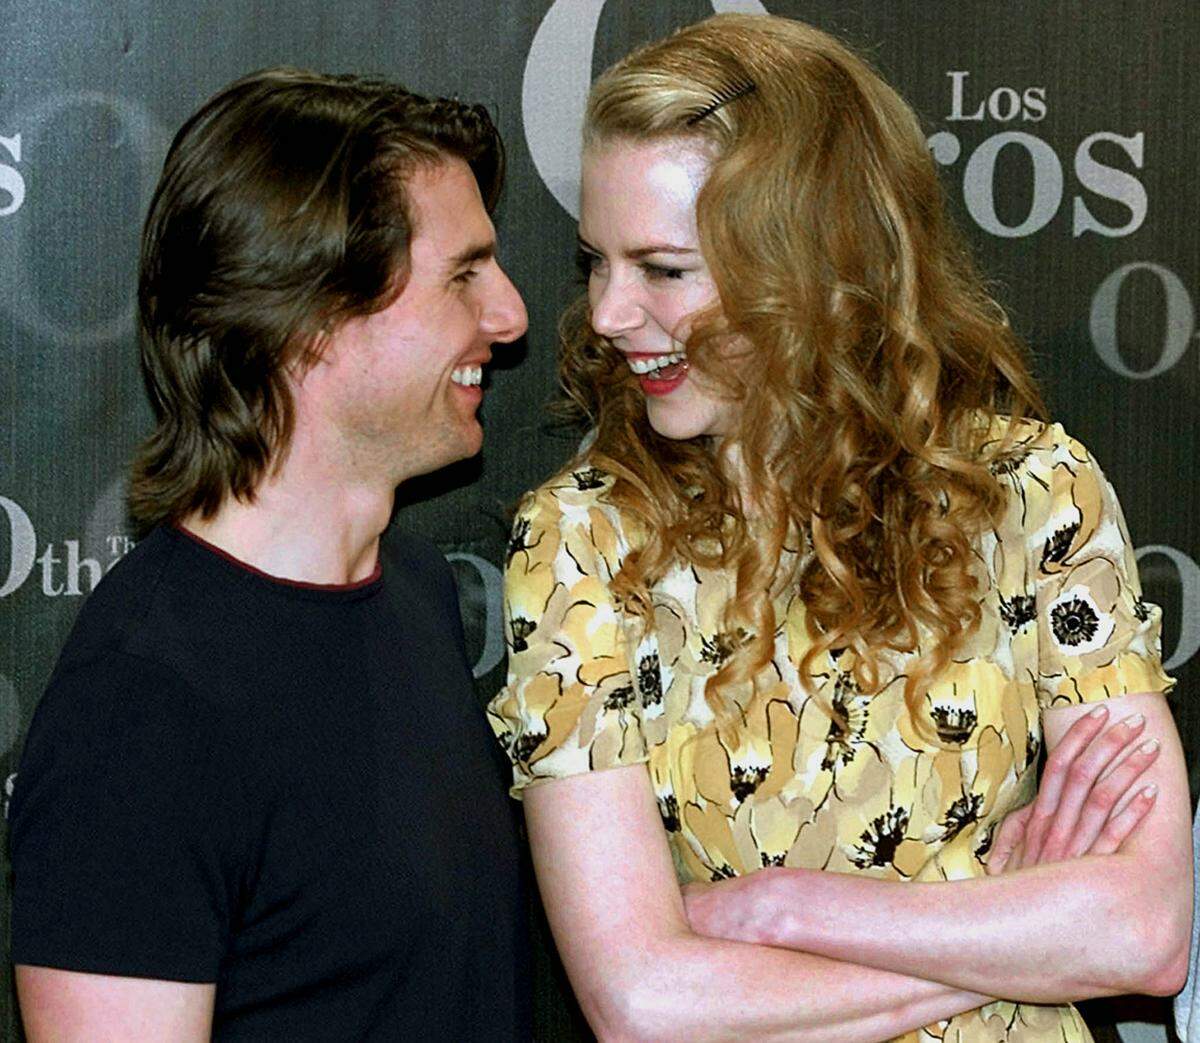 Nach der Scheidung ehelichte er Nicole Kidman, die er bei den Dreharbeiten zum Actionfilm "Tage des Donners" kennenlernte. Das Hollywood-Traumpaar verbrachte elf Jahre zusammen und adoptierte zwei Kinder.